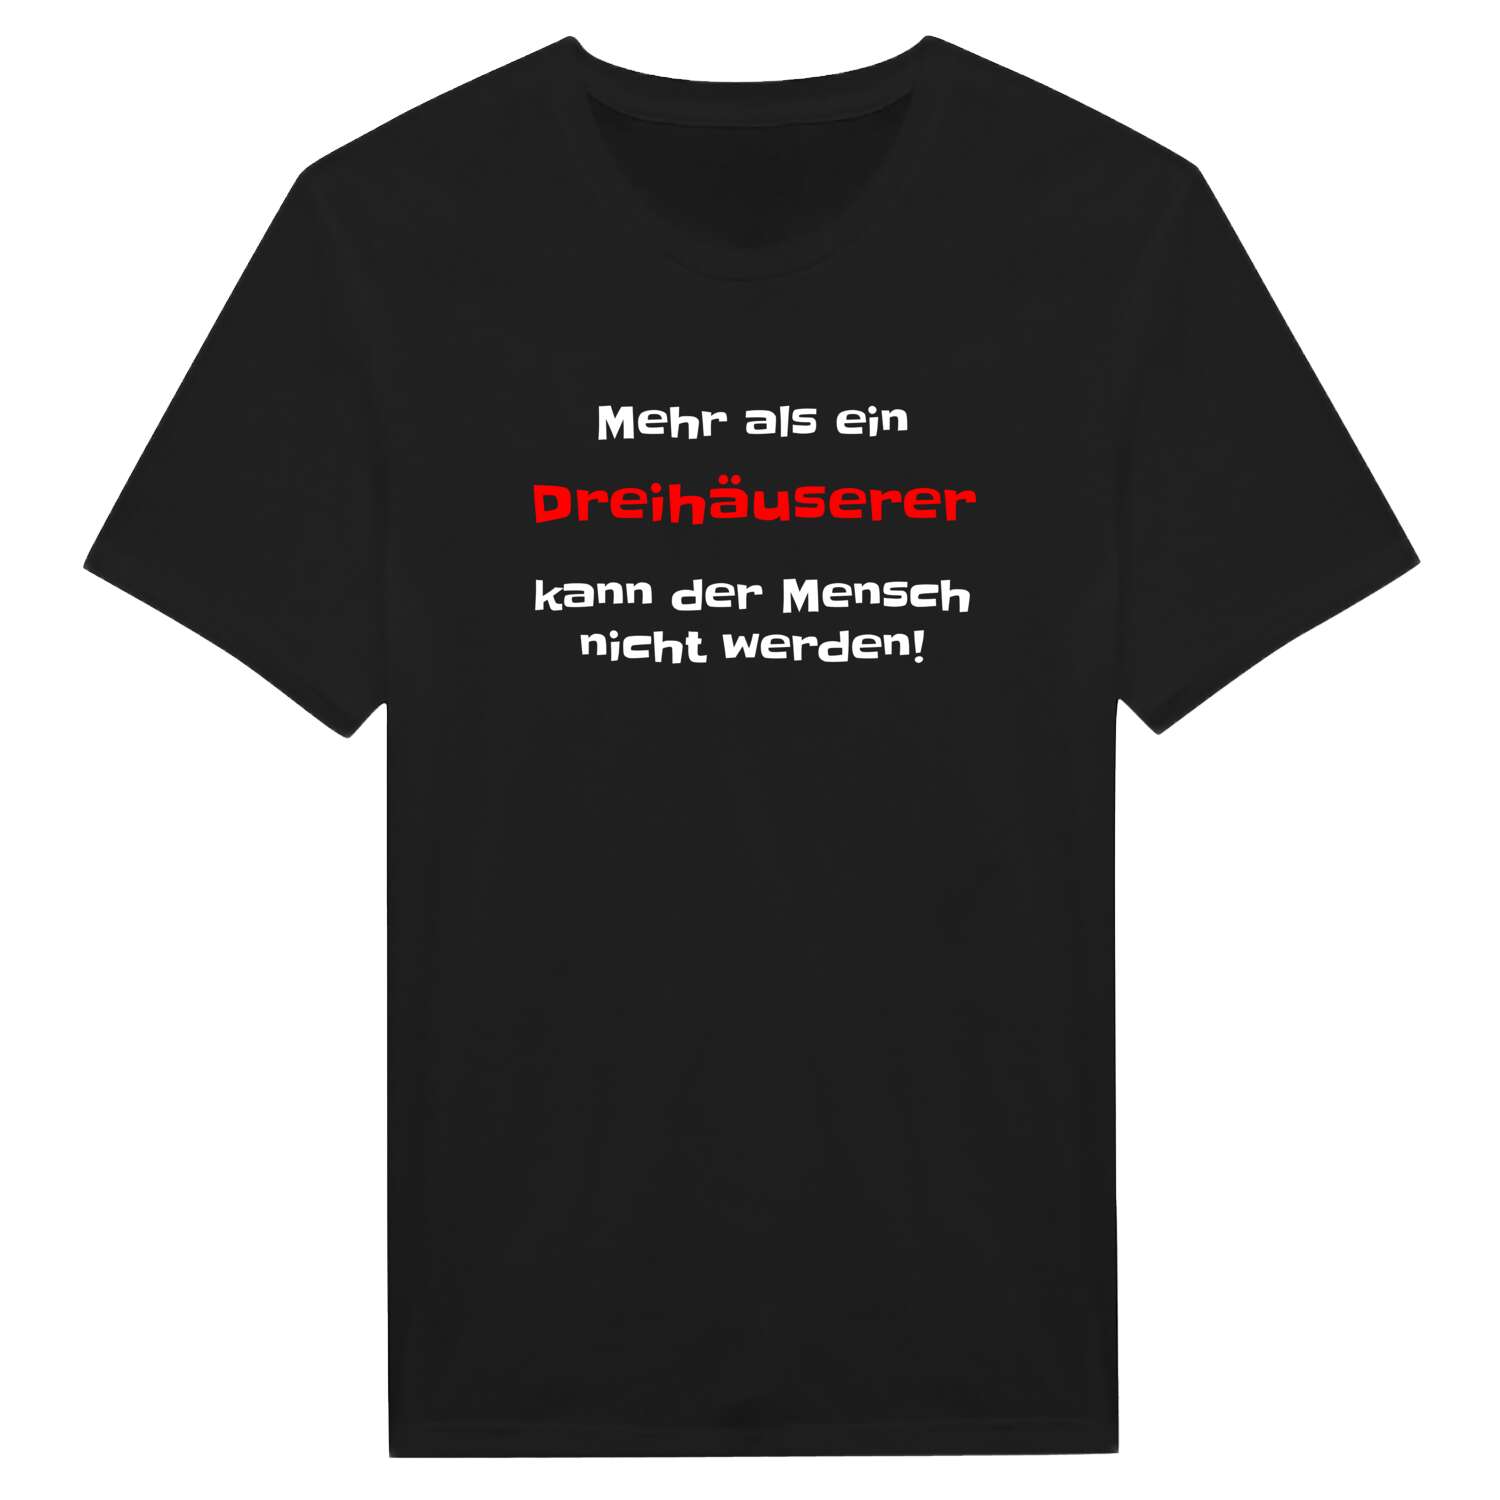 Dreihäuser T-Shirt »Mehr als ein«